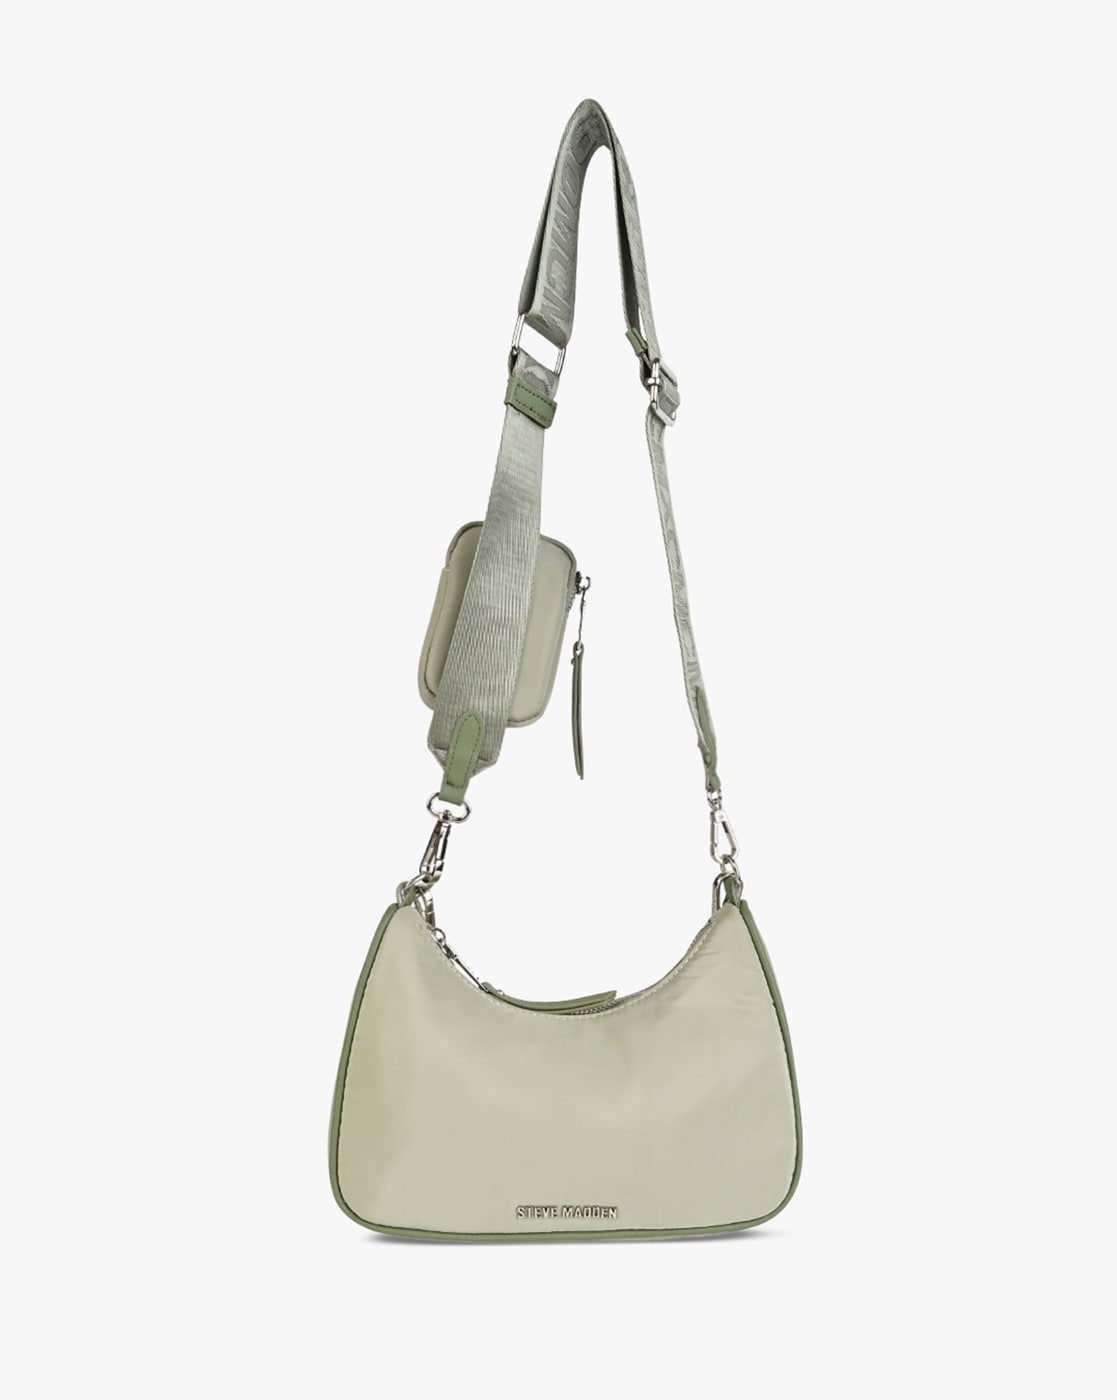 Buy Steve Madden Bvital-T Crossbody Bag - Emerald